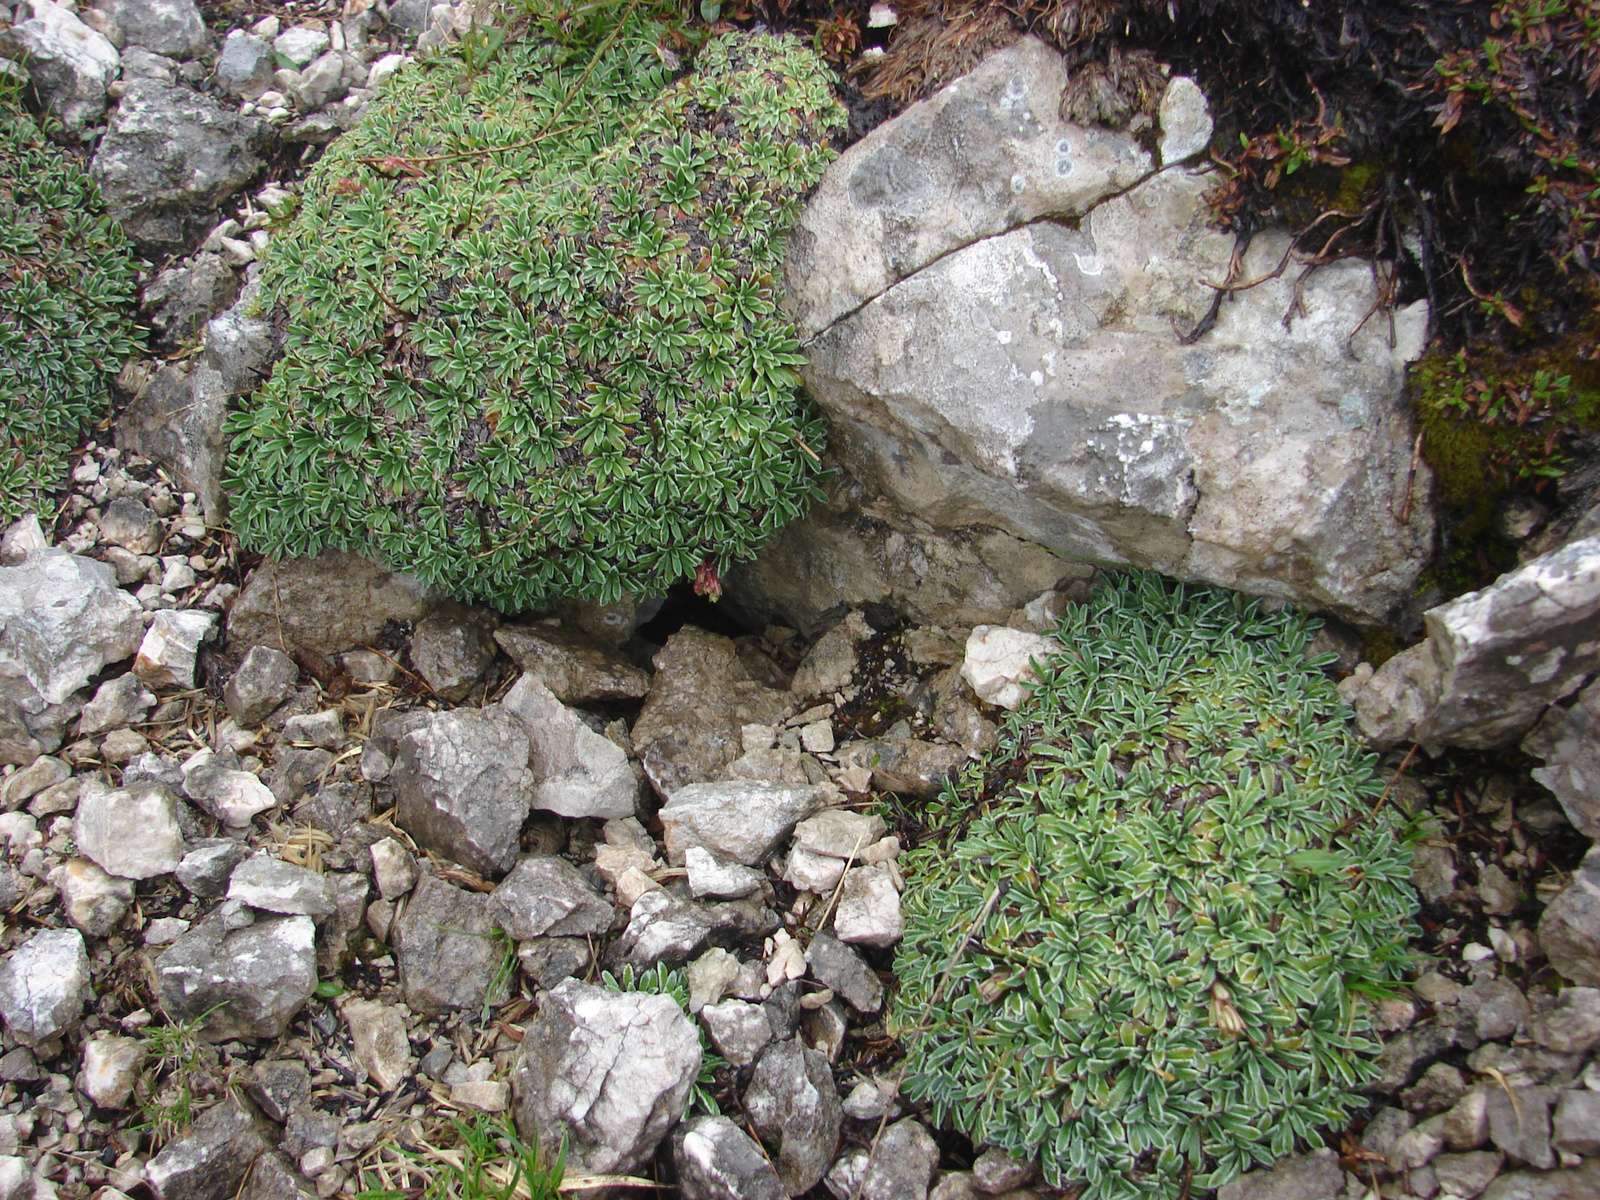 Kőtörőfű (Saxifraga crustata)